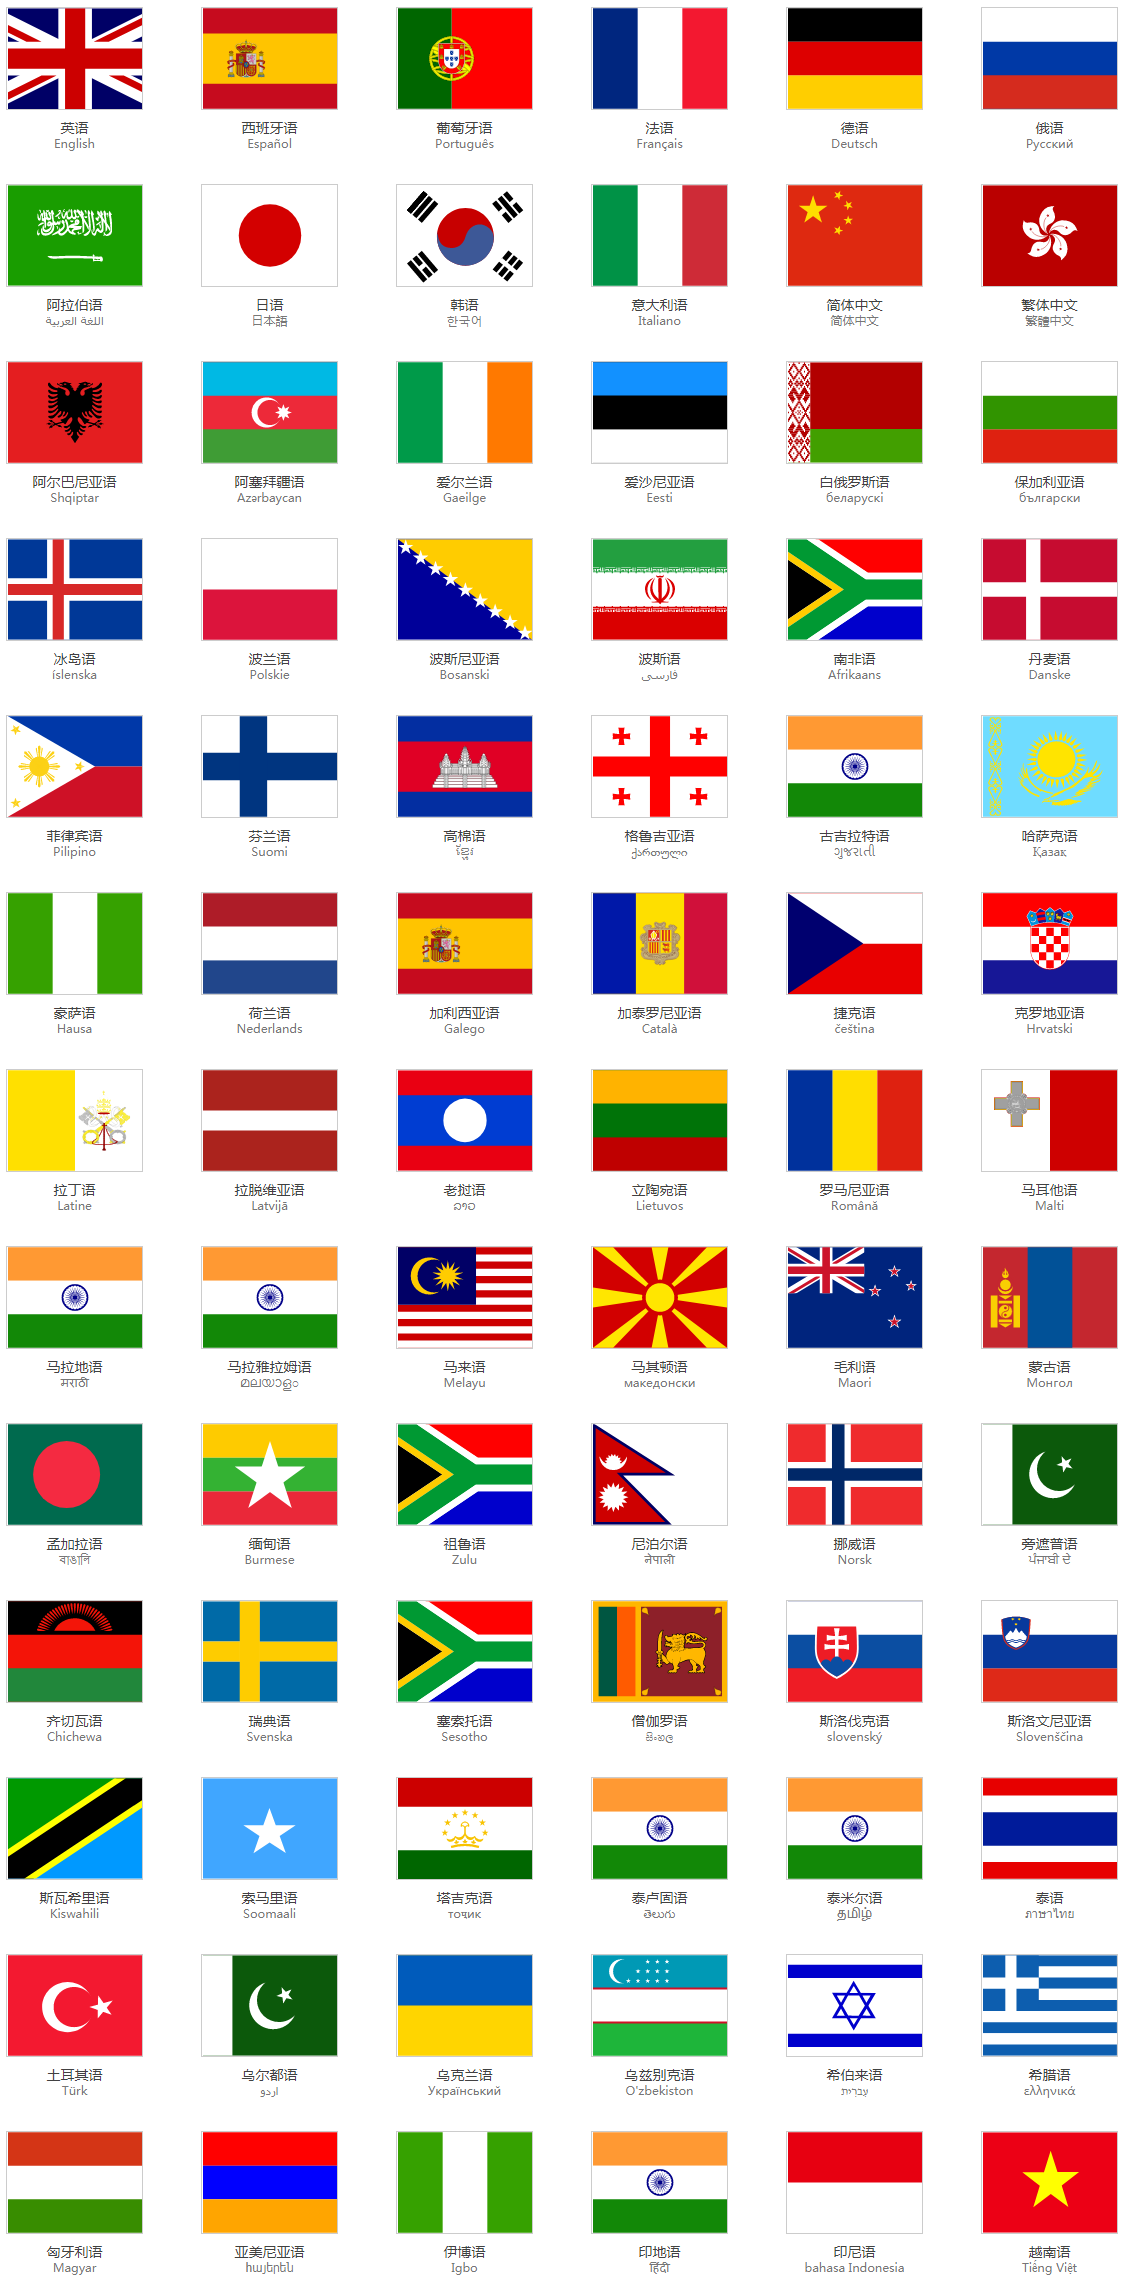 系统支持的全部78种语言列表